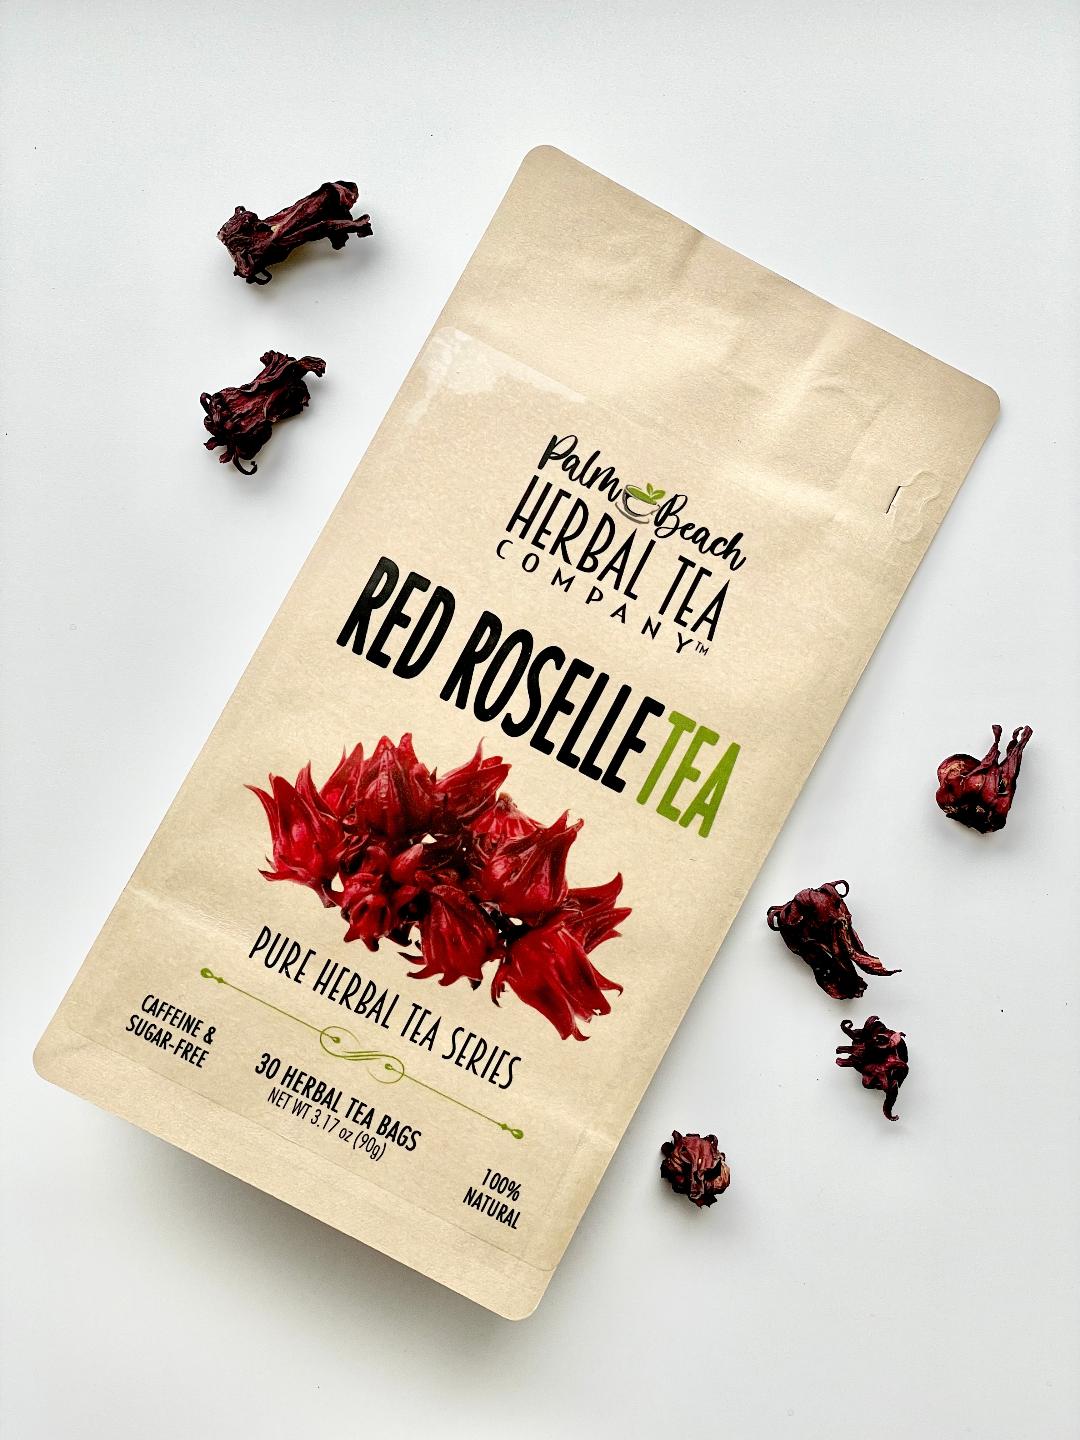 Hibiscus Tea (Roselle)